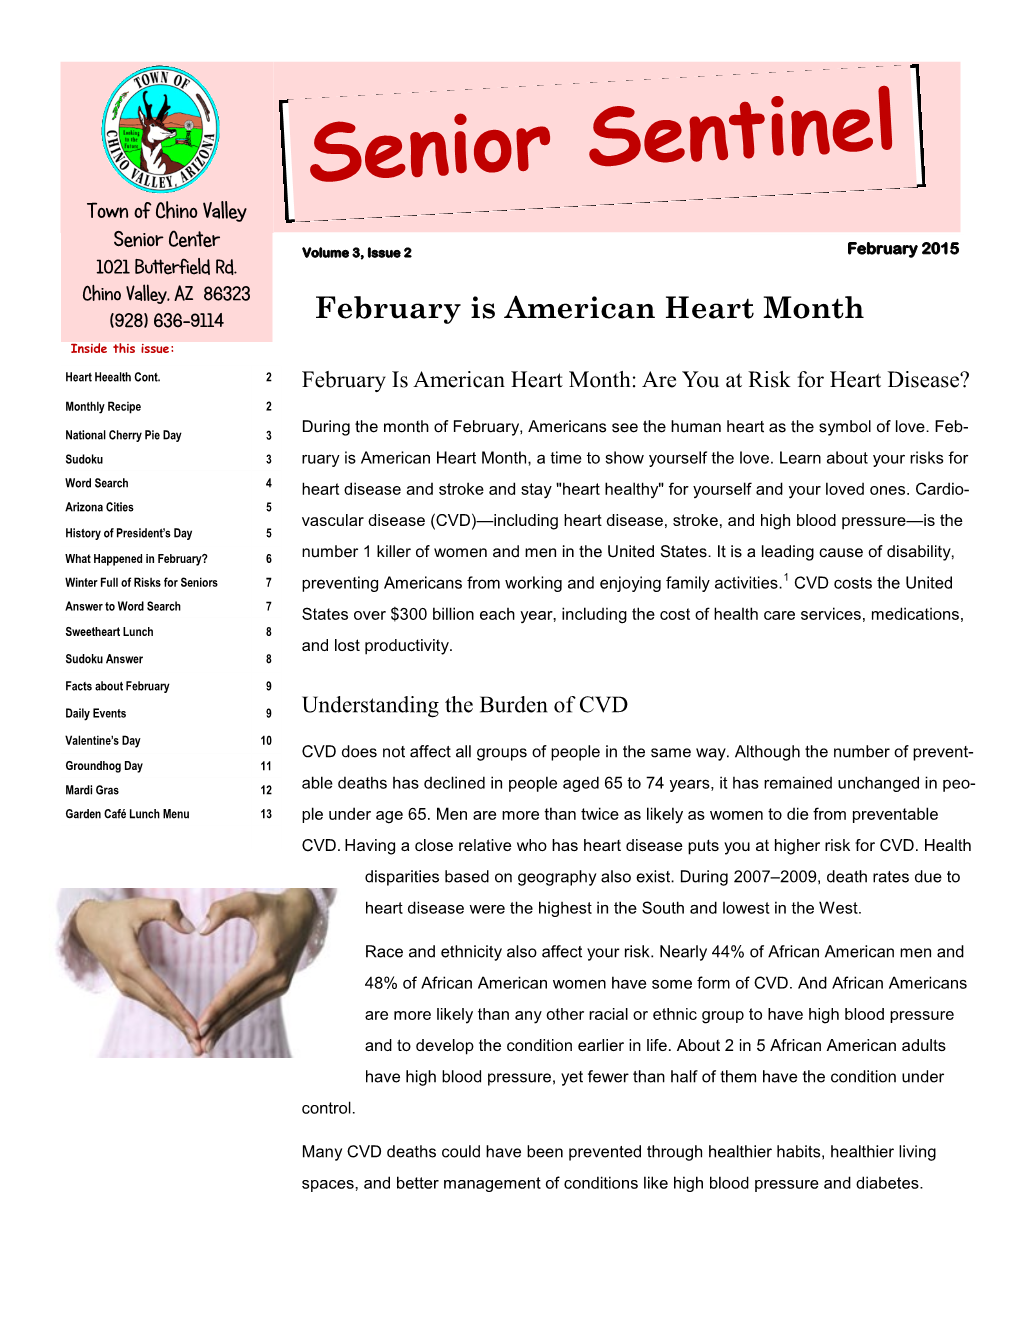 Senior Sentinel Newsletter